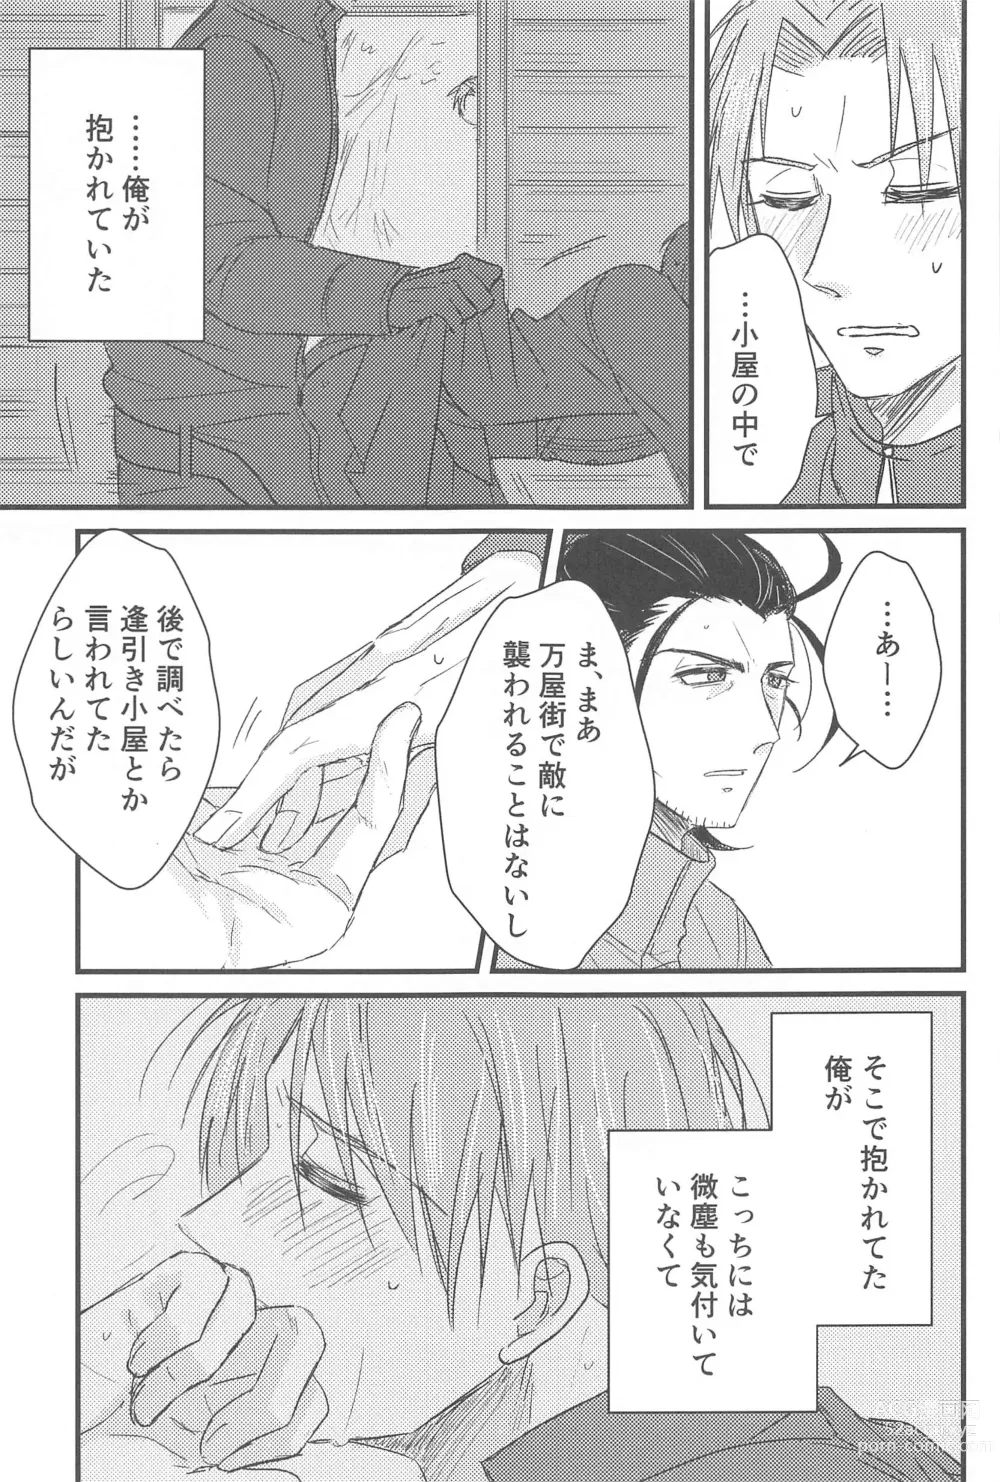 Page 12 of doujinshi Hatsuyo ni Tsugu